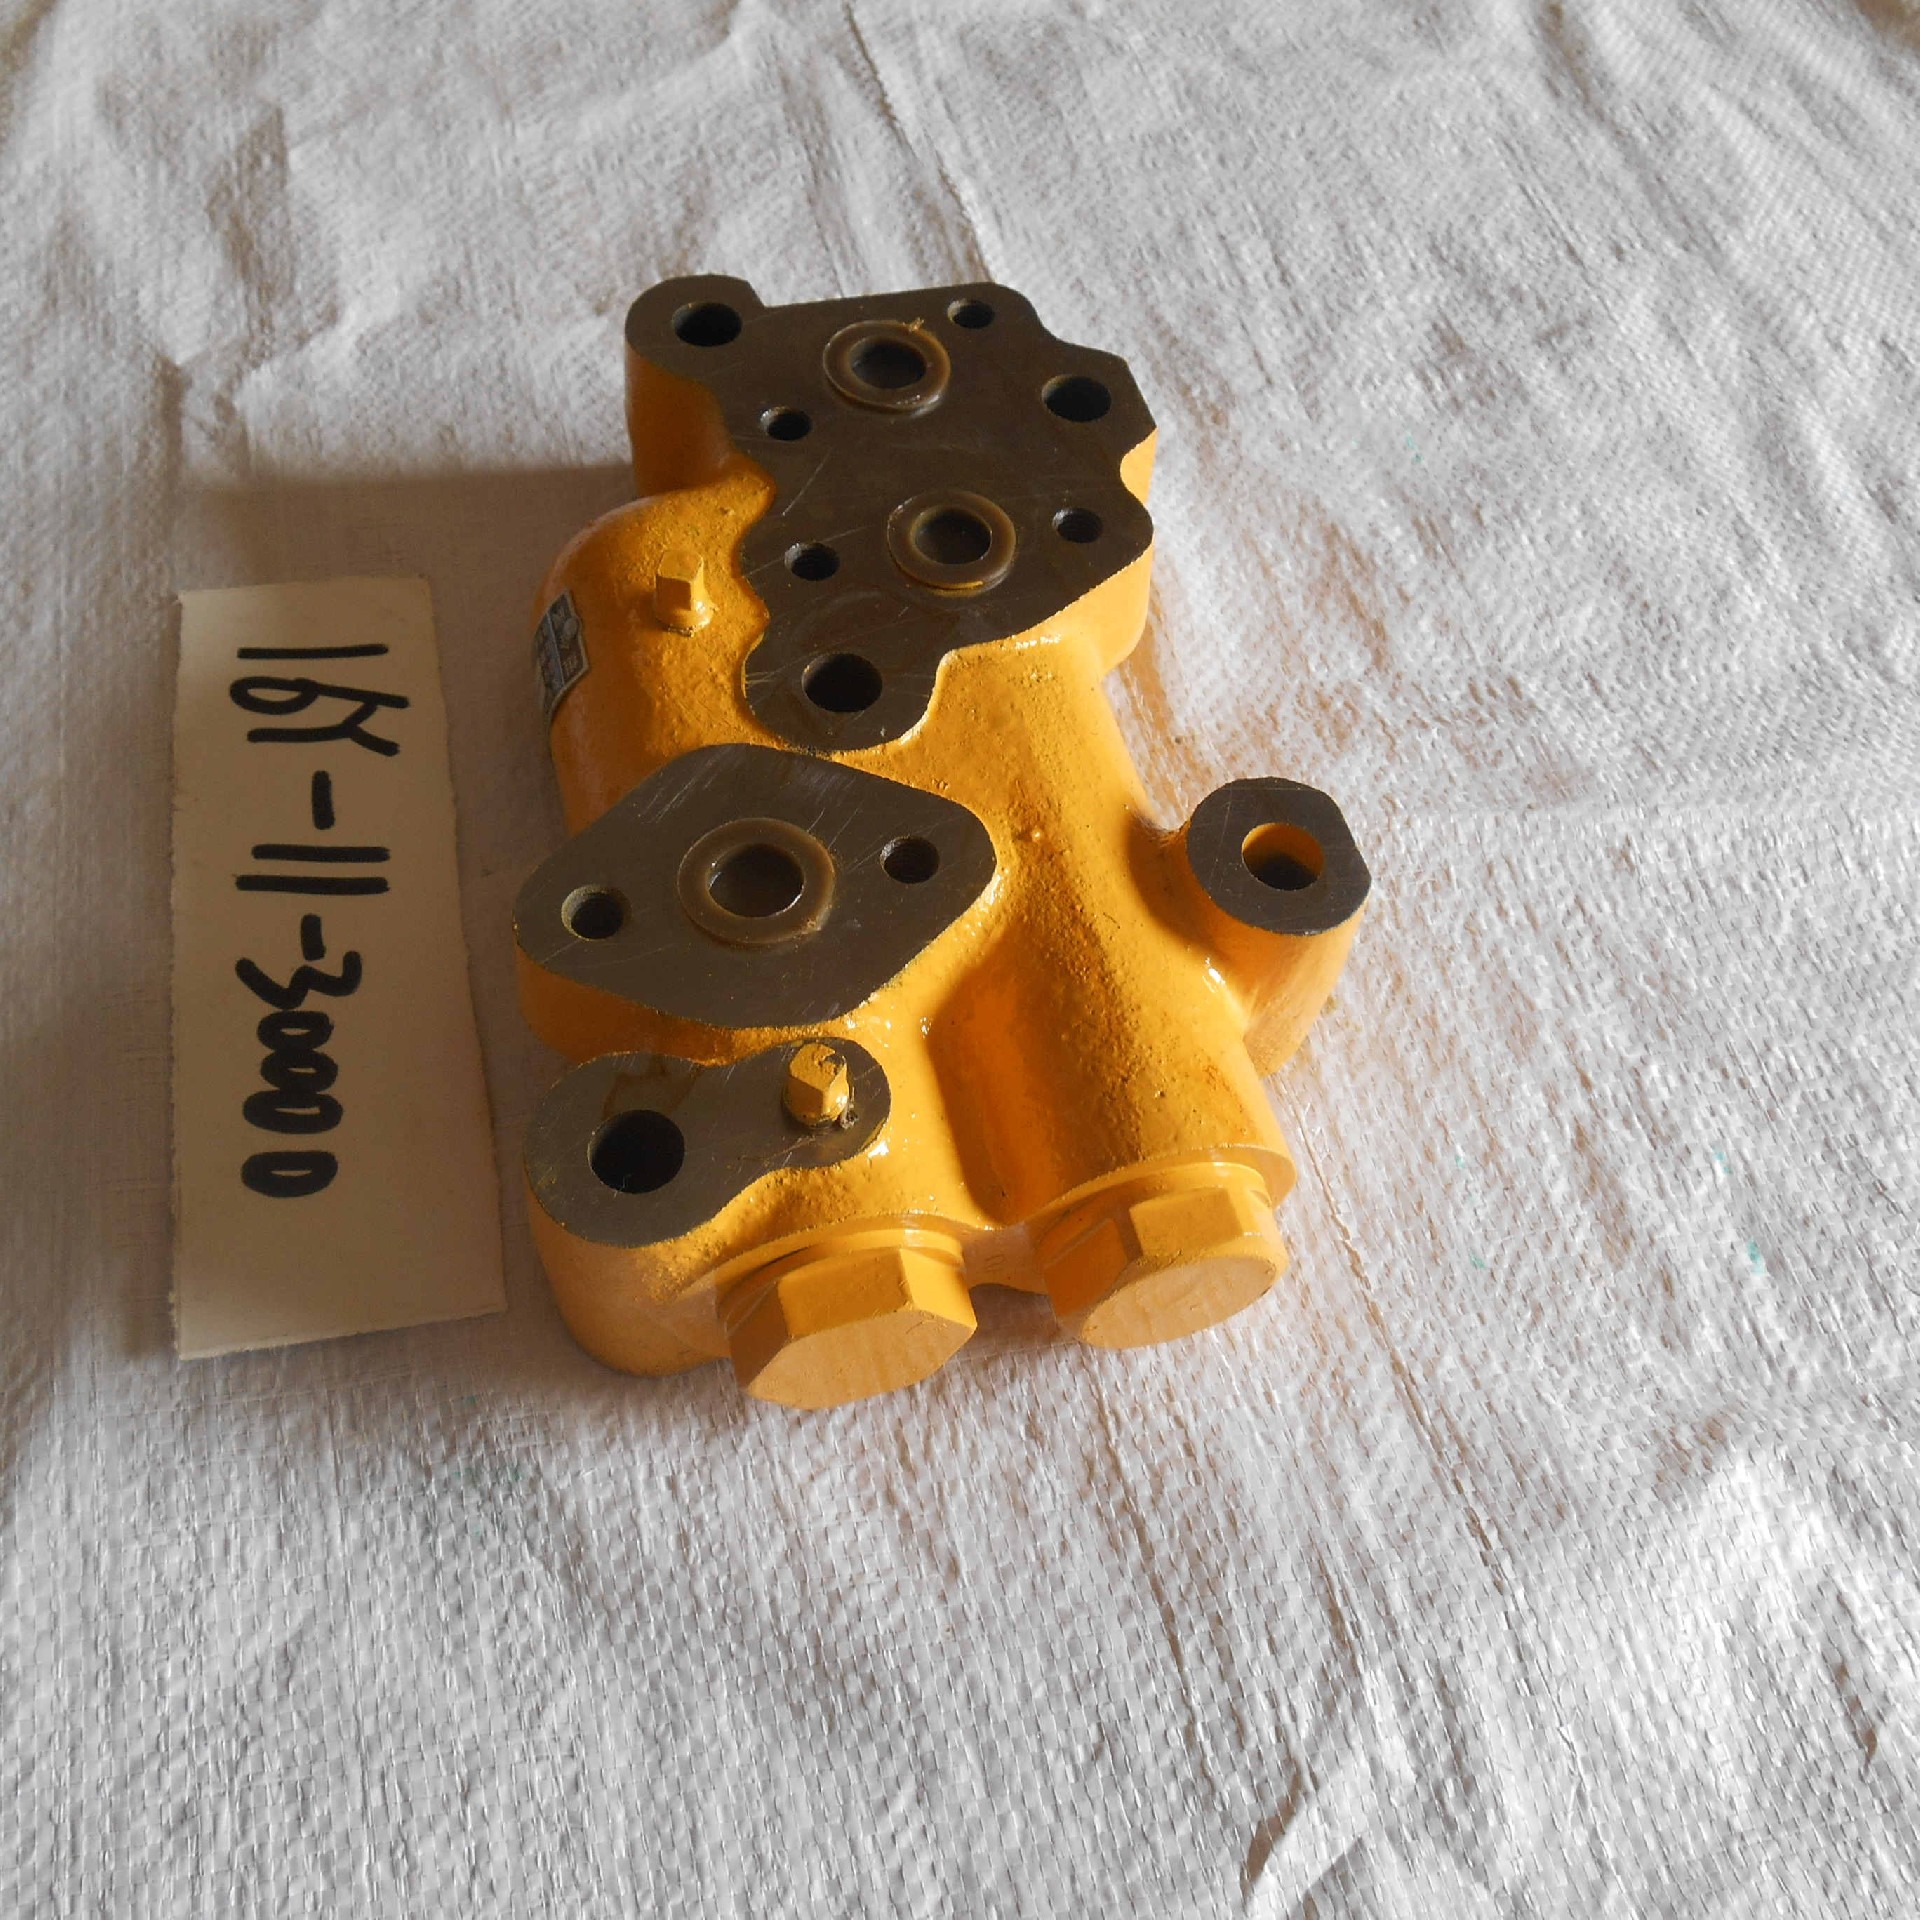 16Y-11-30000 (2)		Combination valve